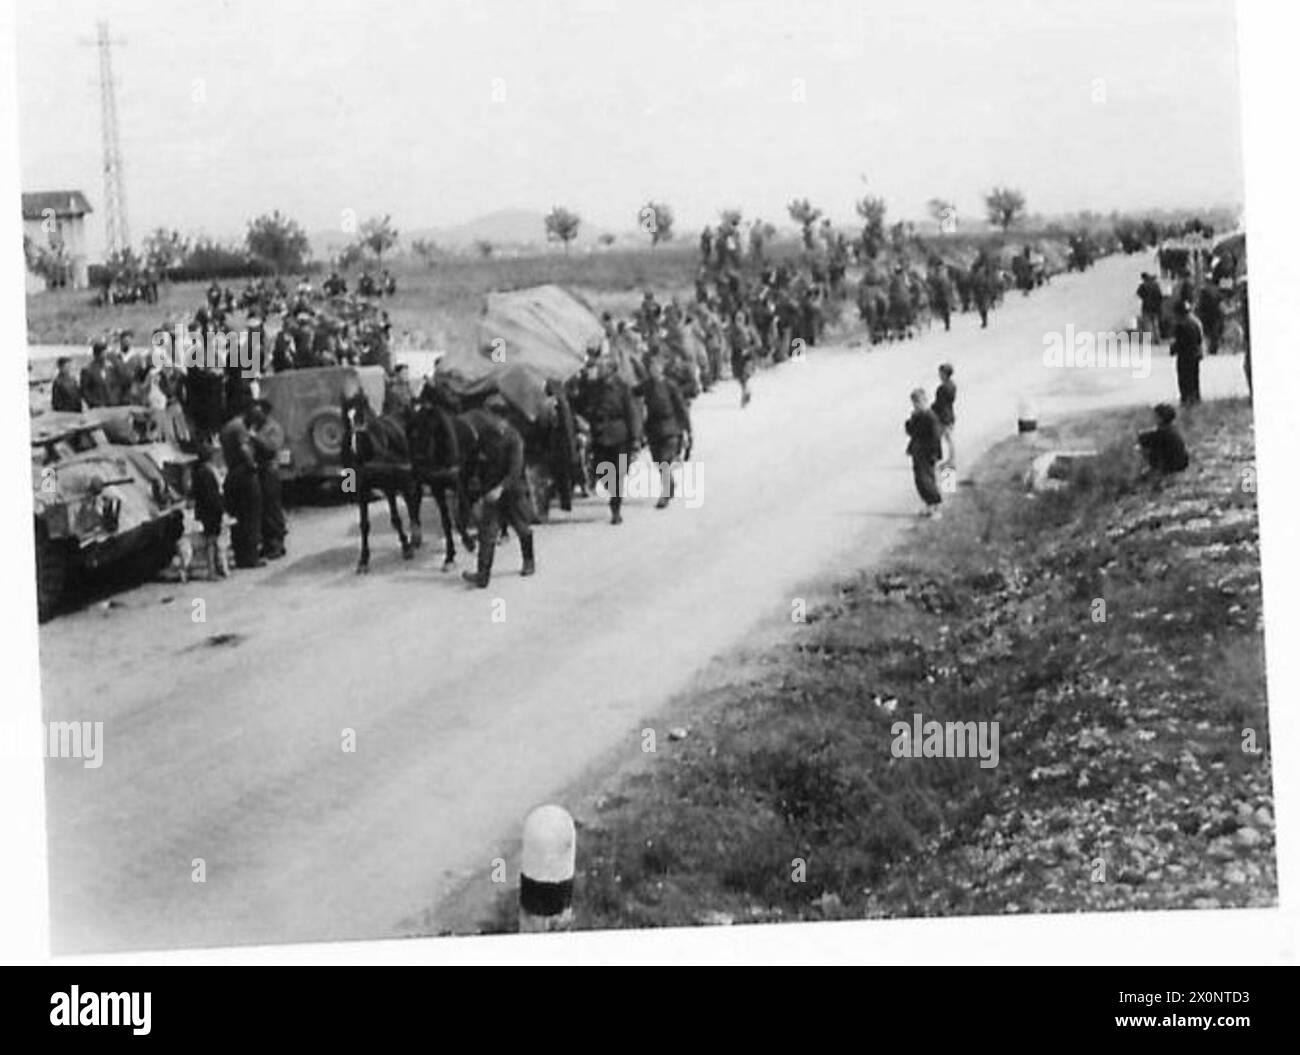 LES CHETNIKS SE RENDENT - les troupes Chetnik se déplacent dans leur zone de liège. Négatif photographique, Armée britannique Banque D'Images